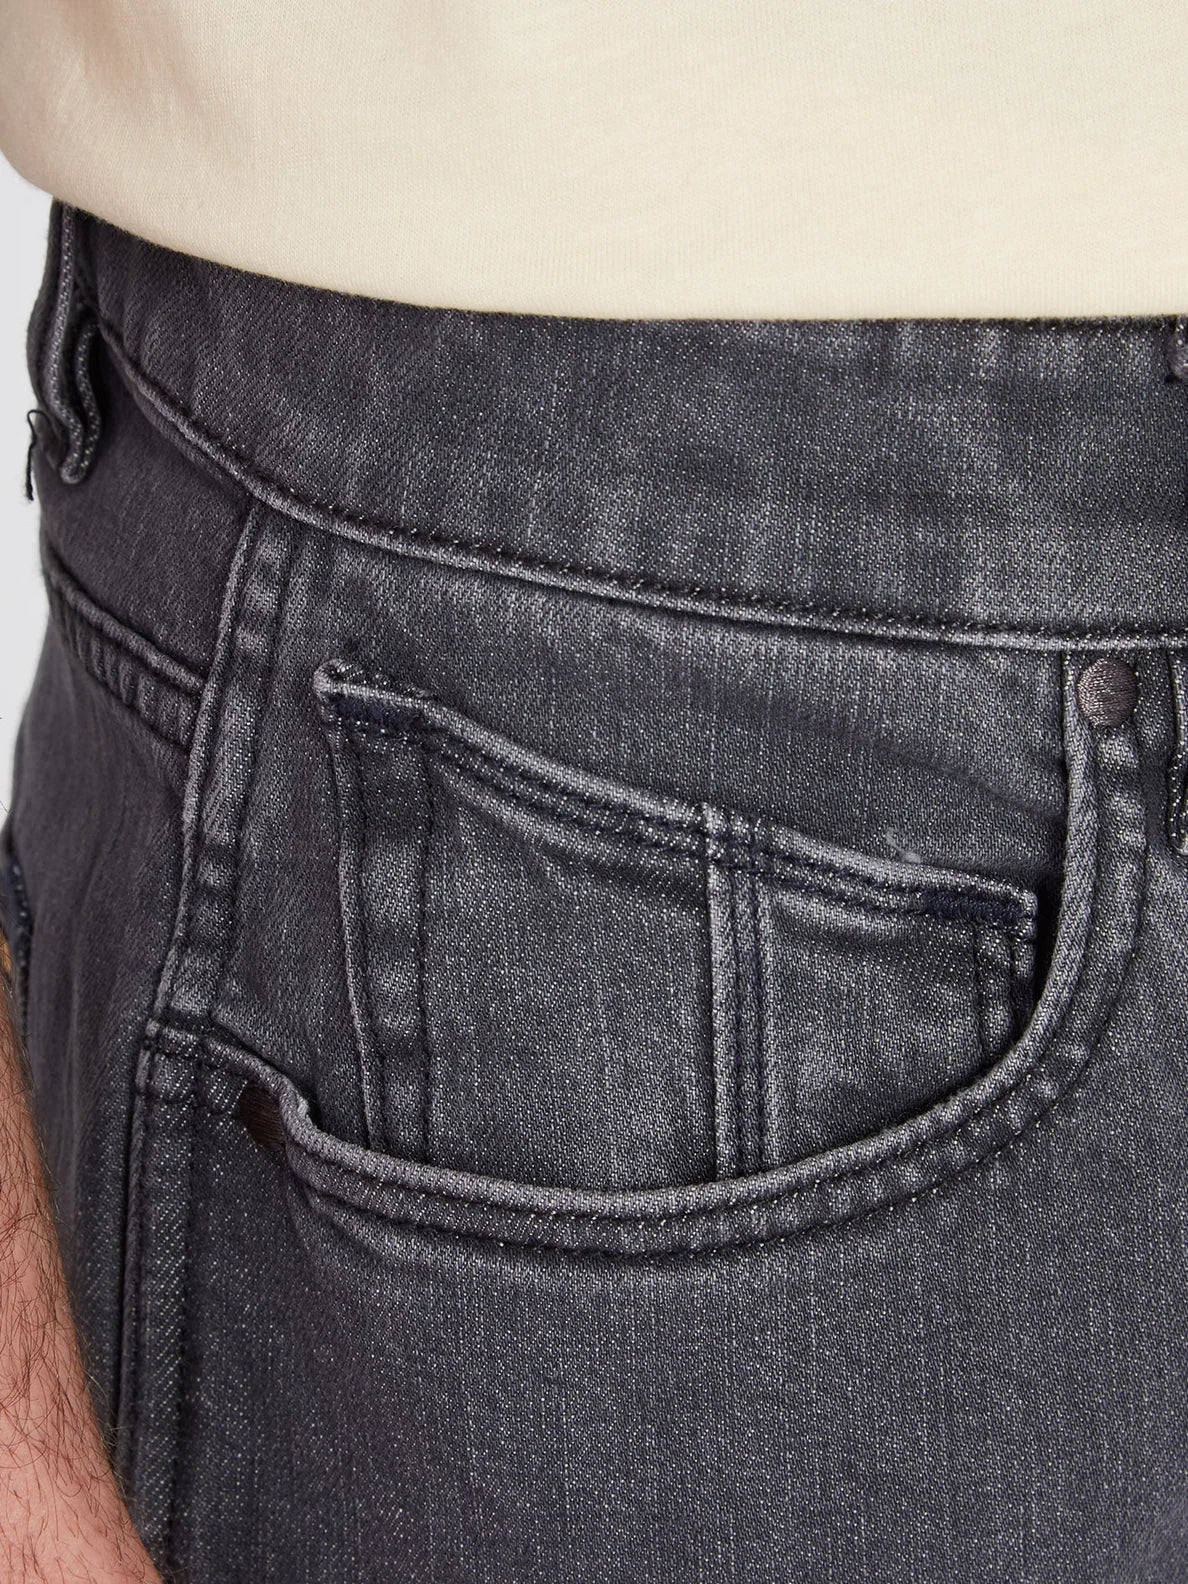 Vaqueros Volcom Modown Denim - Easy Enzyme Grey | Pantalones Tejanos | Todos los pantalones de hombre | Volcom Shop | surfdevils.com